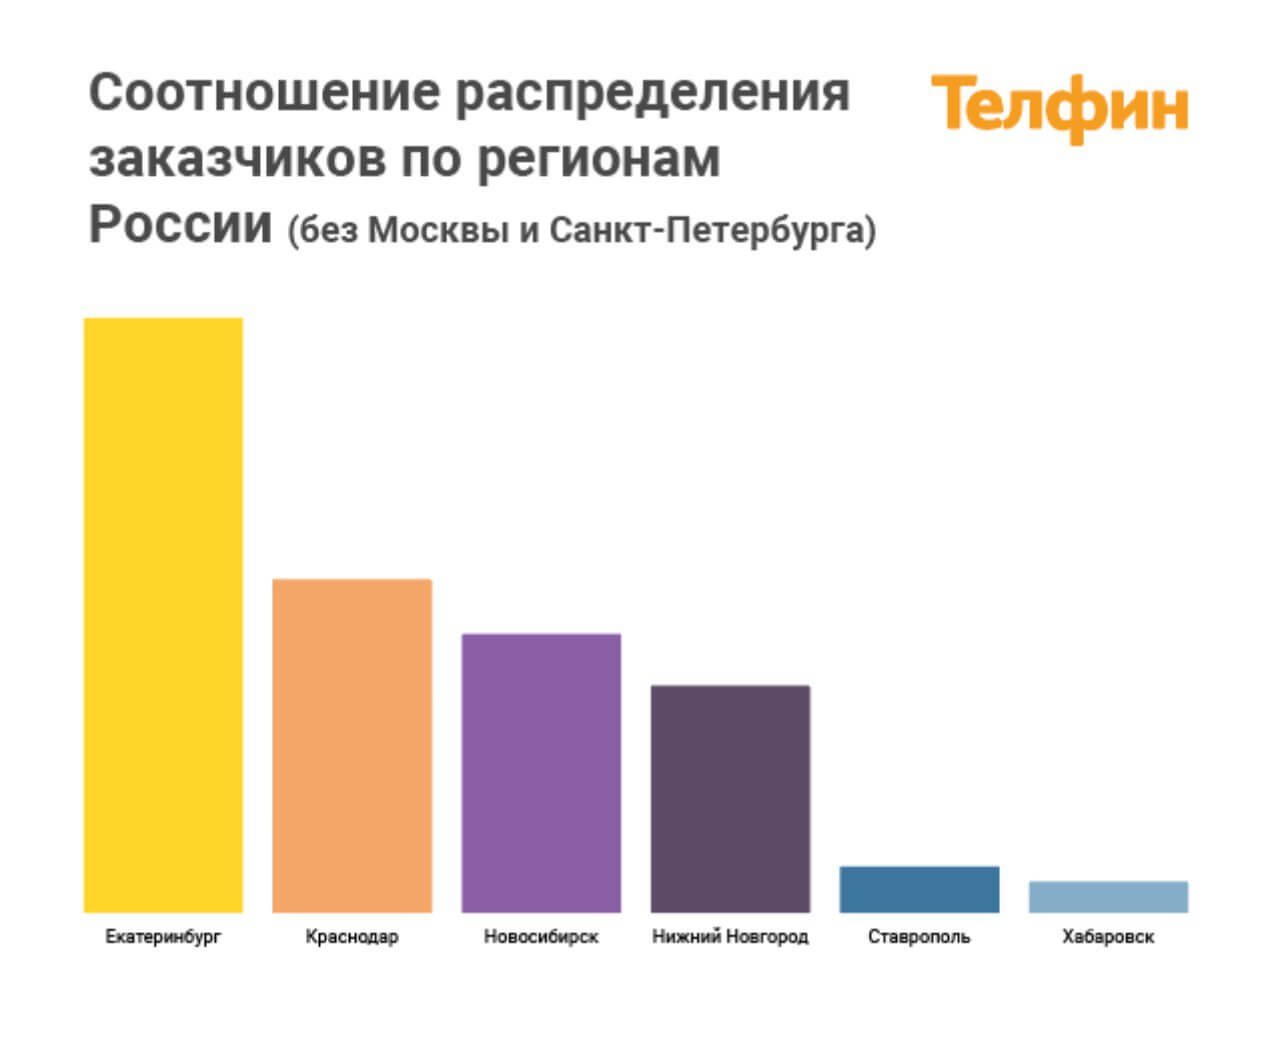 Соотношение распределения заказчиков ip-телефонии по регионам России (без Москвы и Санкт-Петербурга)